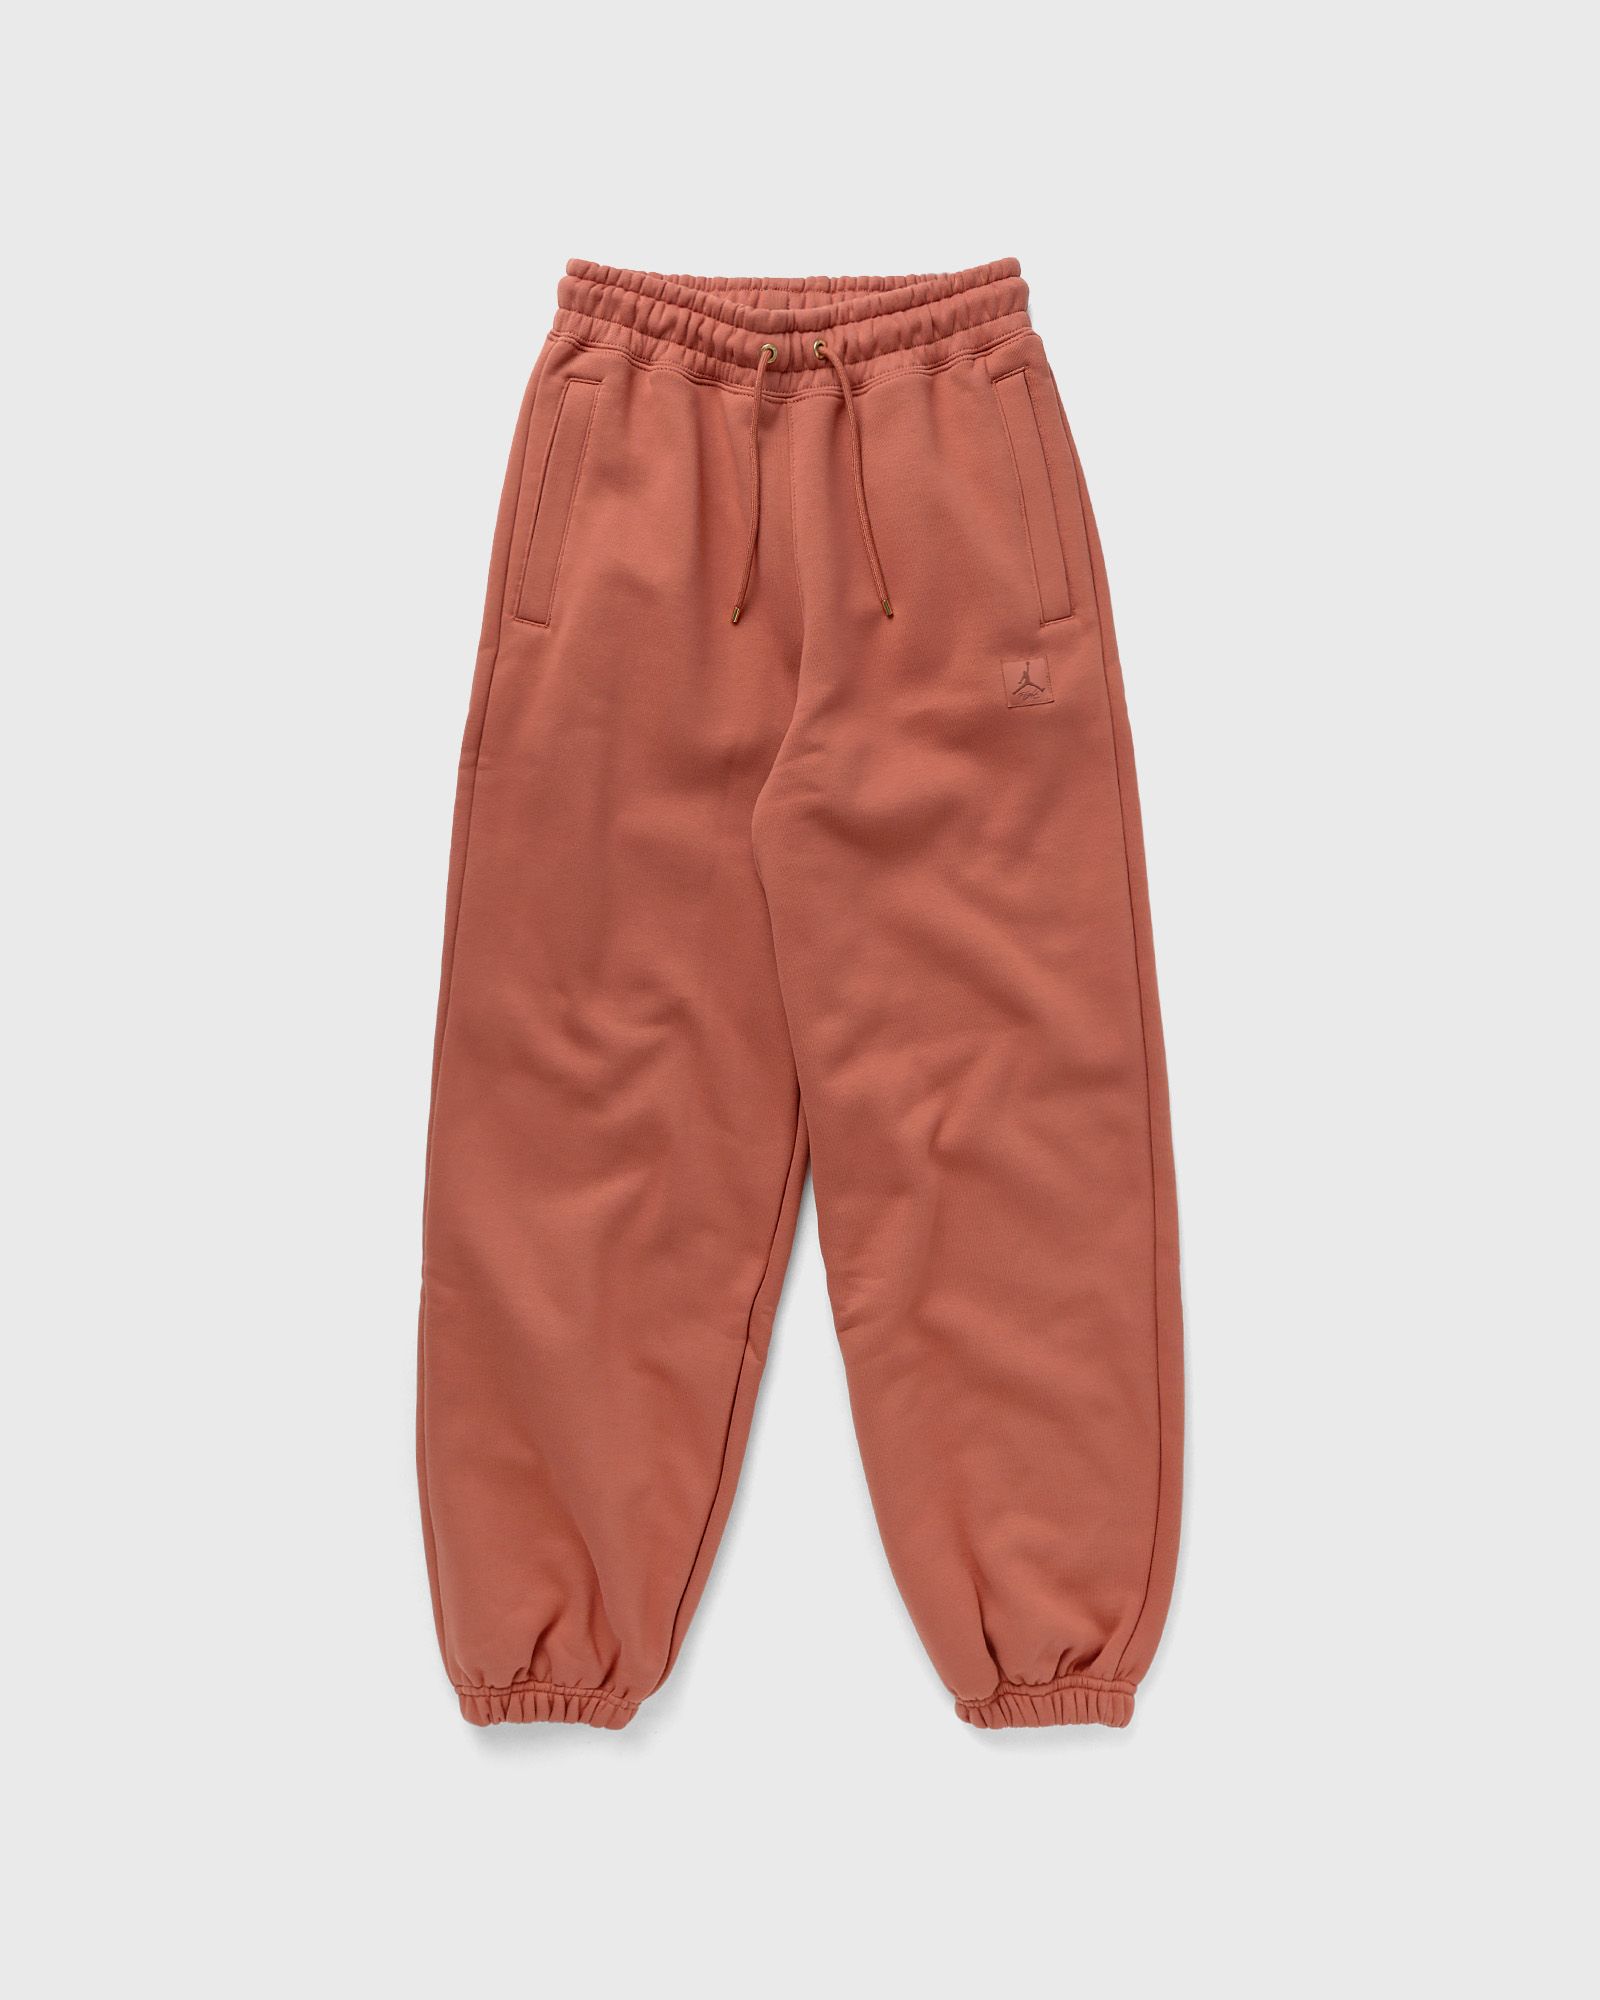 Jordan - wmns flight fleece pants women sweatpants orange in größe:m